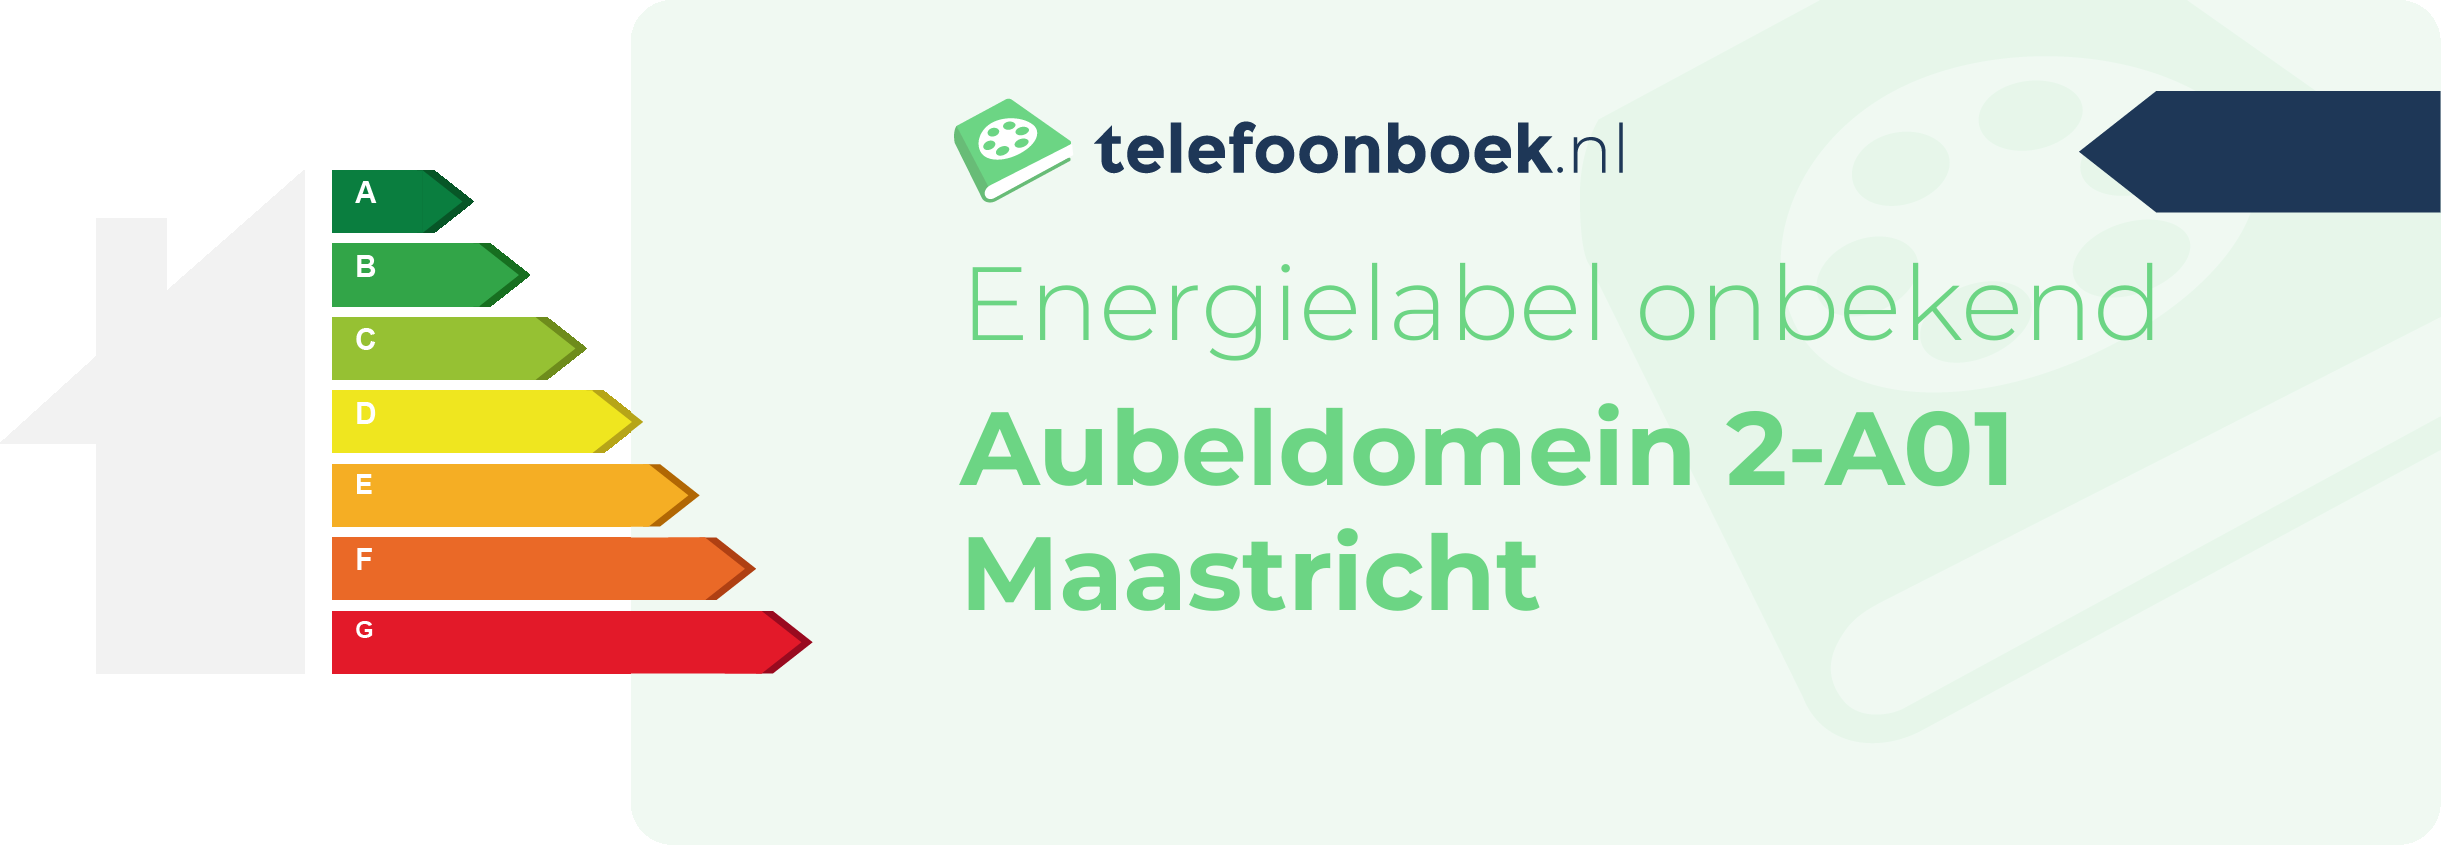 Energielabel Aubeldomein 2-A01 Maastricht